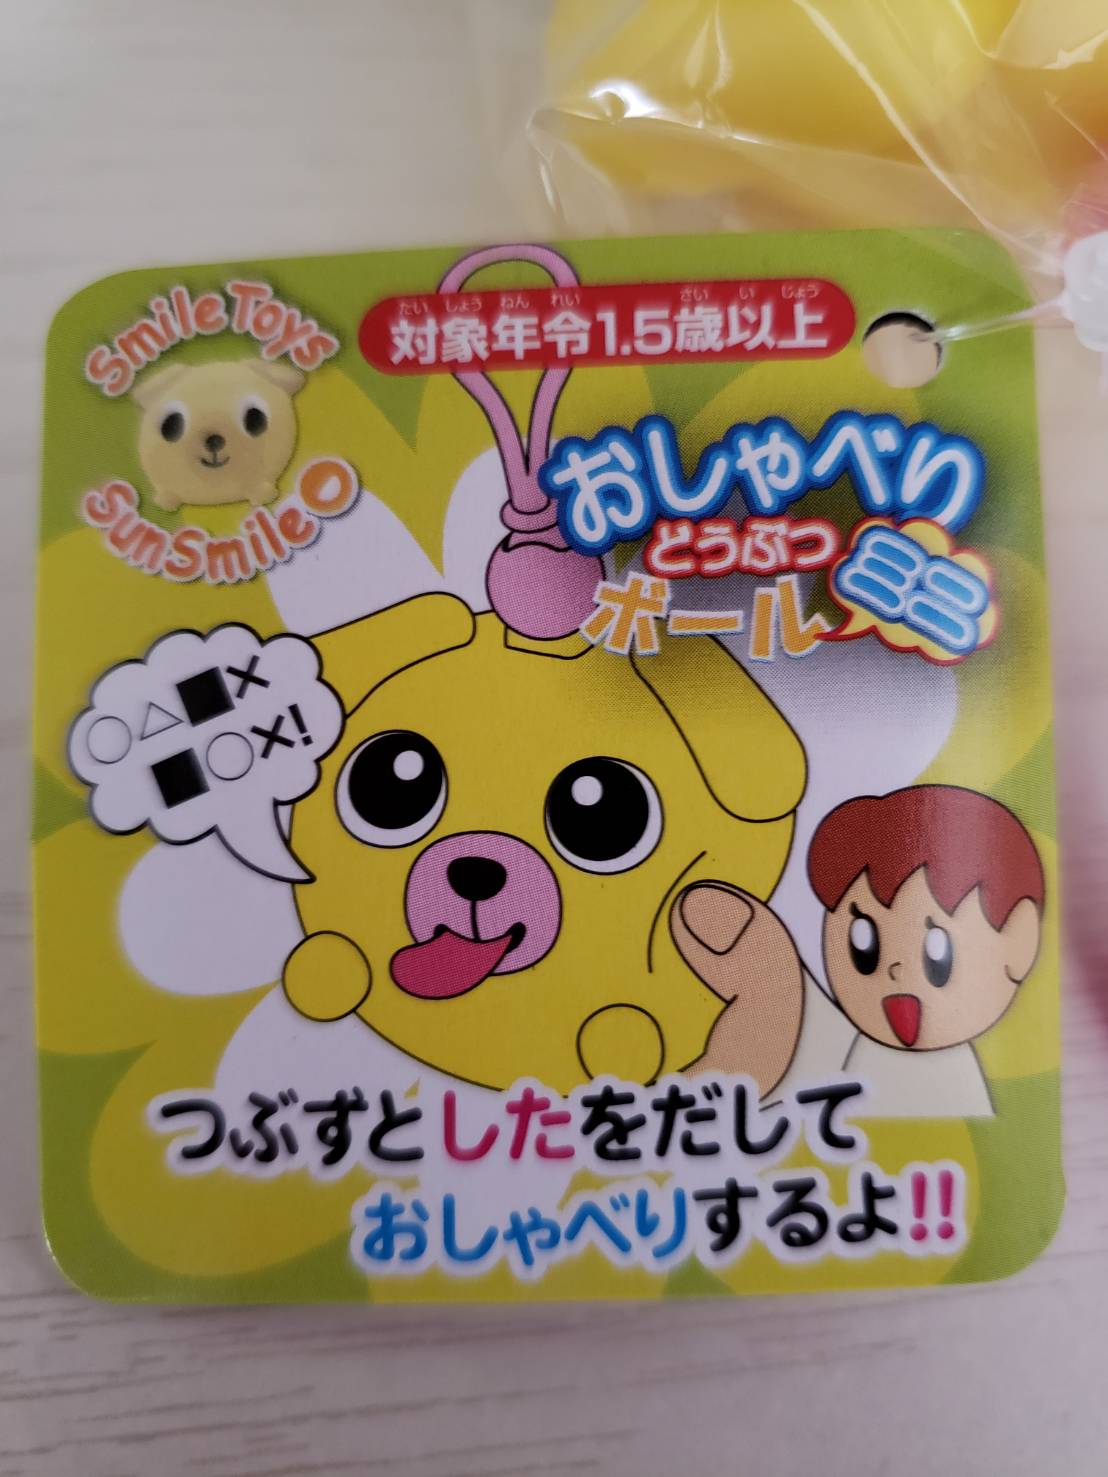 サンスマイル おしゃべりどうぶつボール イヌ (3 New Version Talking Animal Ball Dog)